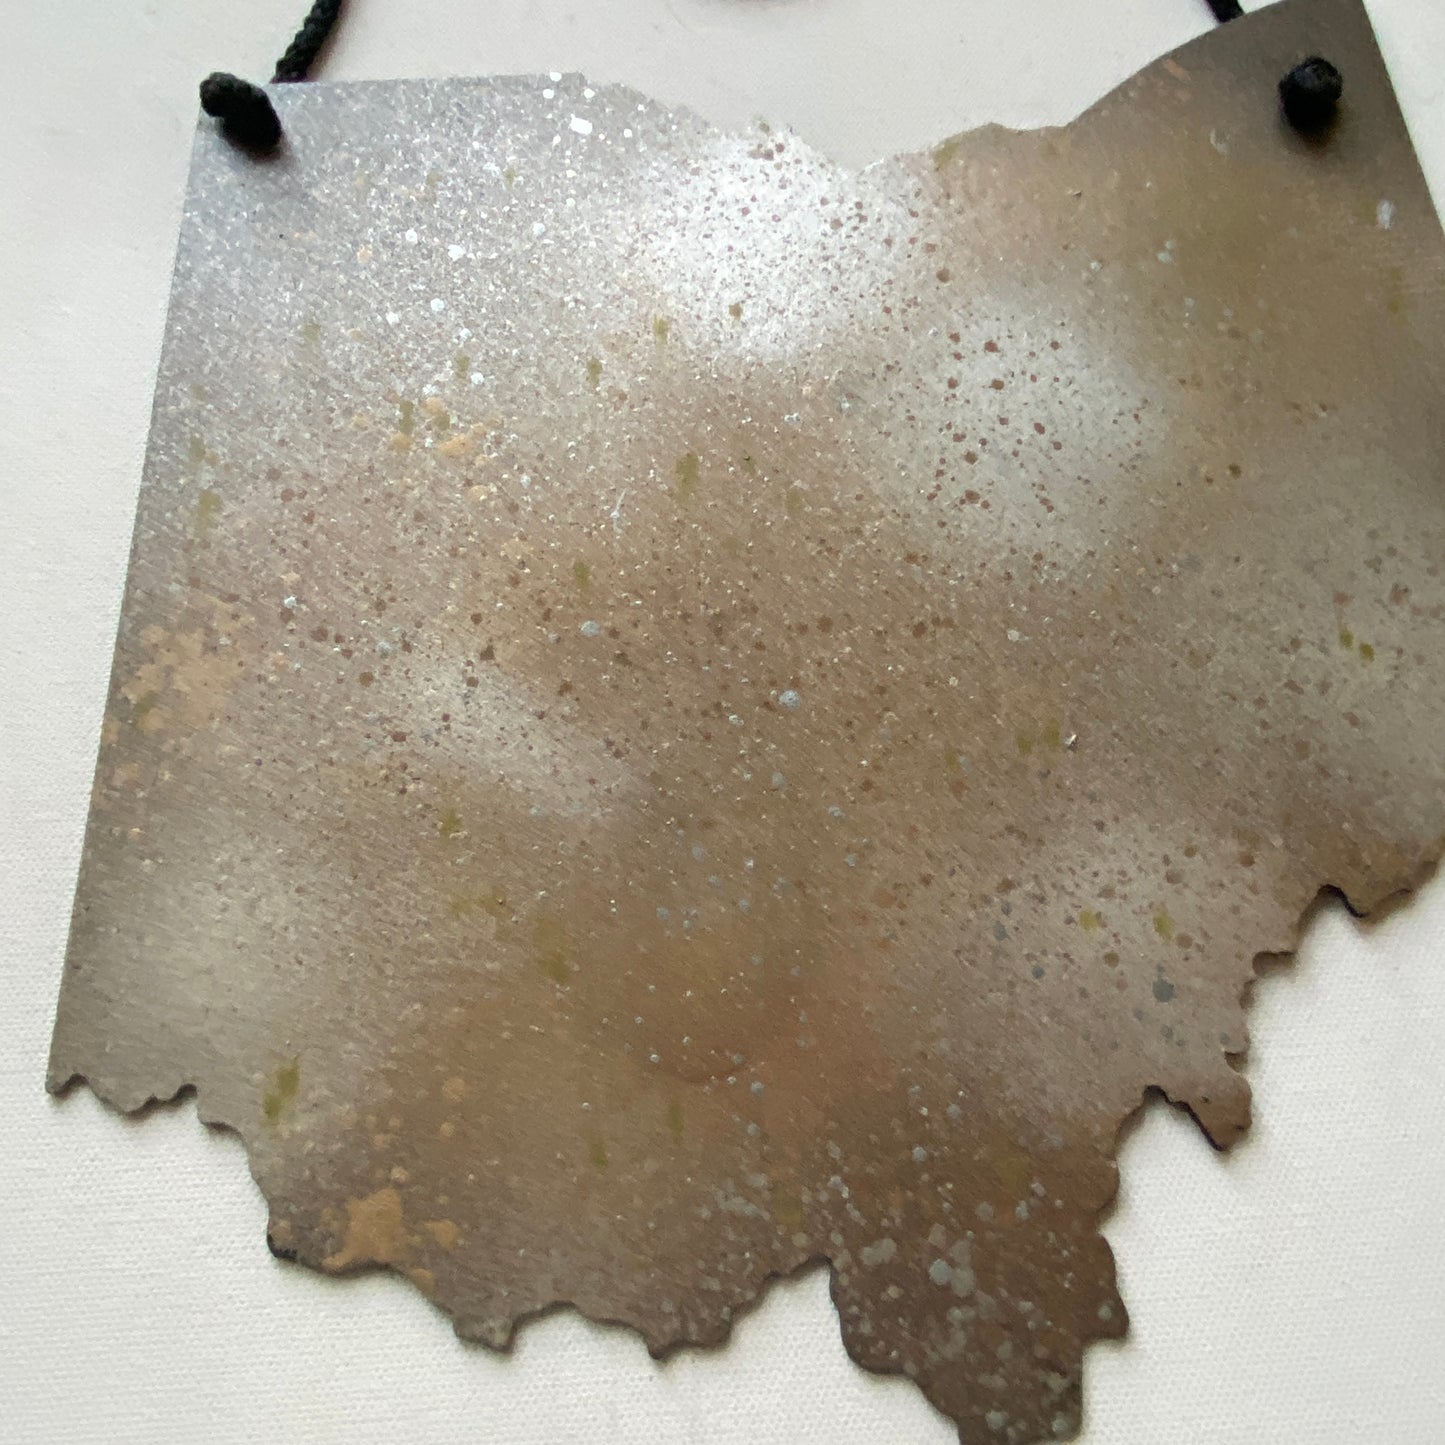 Hand Painted Steel Ohio Wall Art - Metallic Splatter Finish